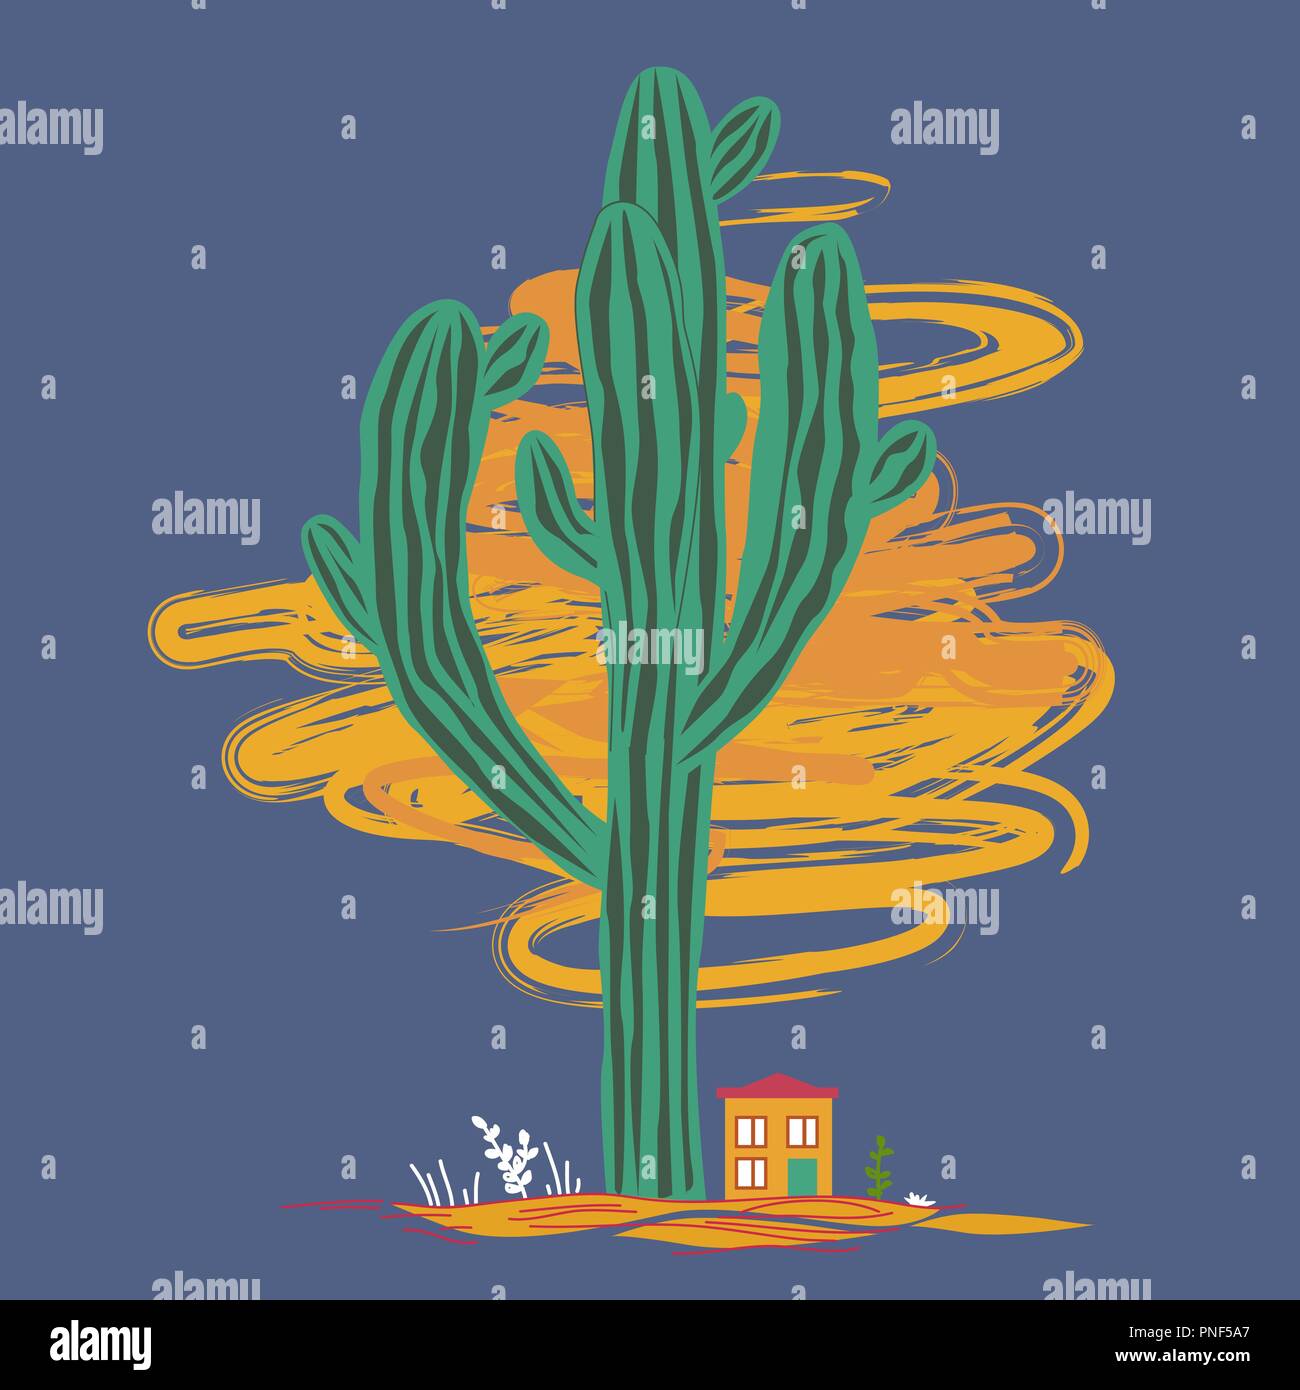 Cute Cartoon Illustration mit hohen Saguaro Kakteen und kleinen Haus. Mexikanische märchenhafte Landschaft, Drucken für Karten oder Textil, vector Hintergrund Stock Vektor